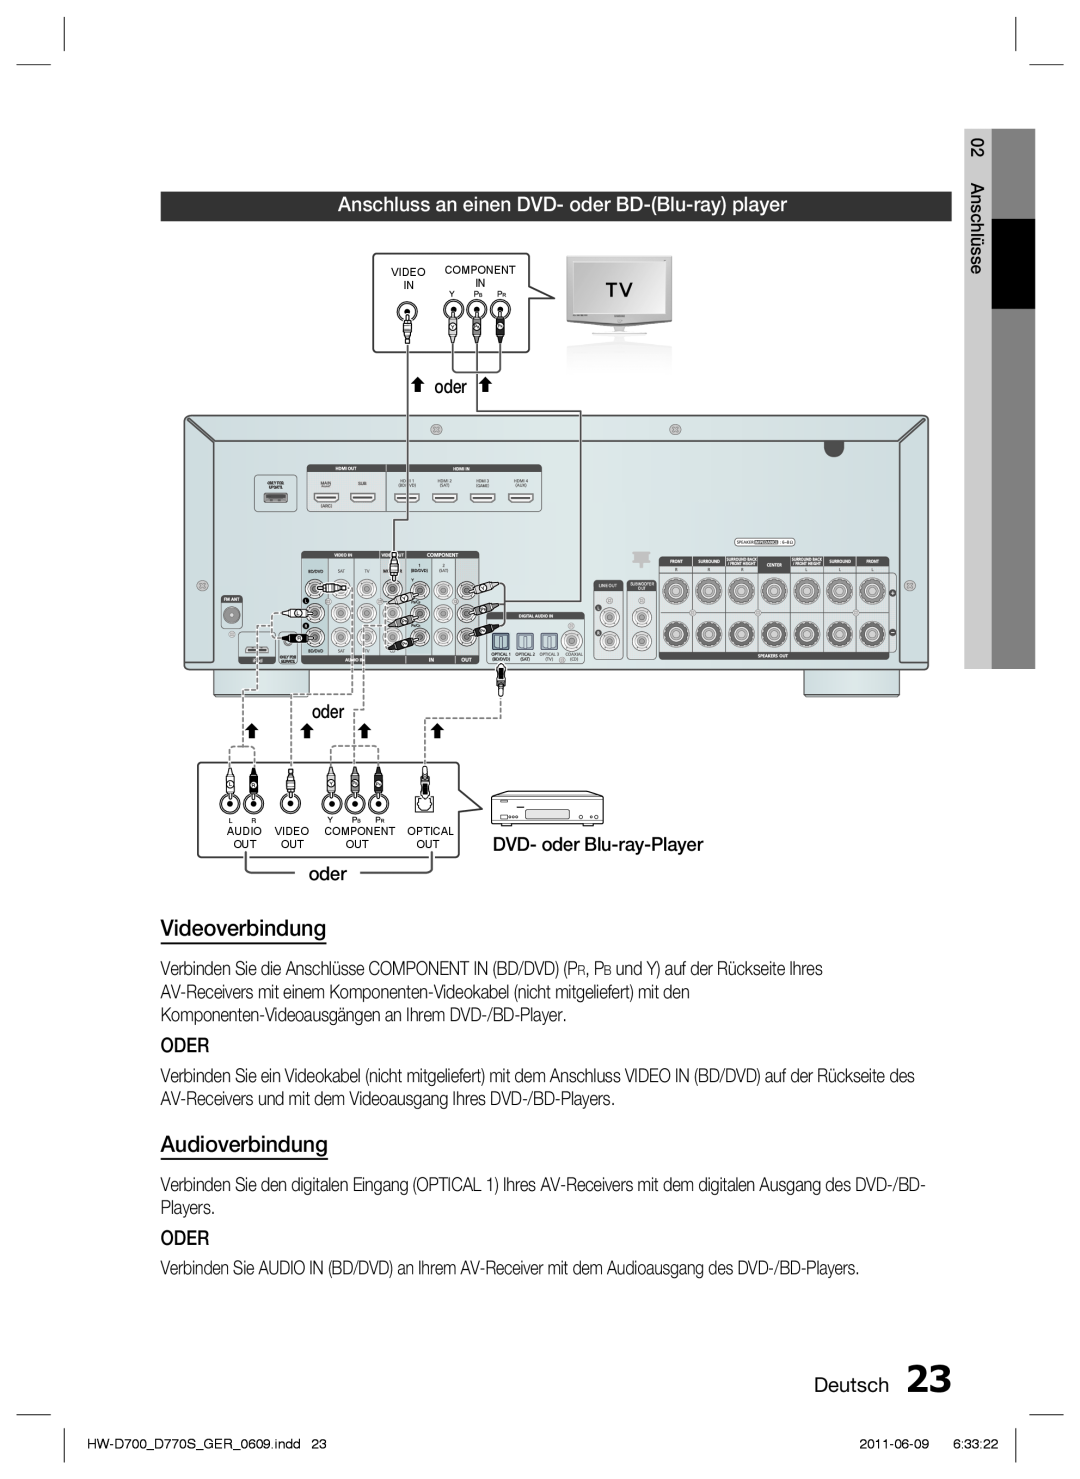 Samsung HW-D700/EN manual Anschluss an einen DVD- oder BD-Blu-ray player, Videoverbindung, Audioverbindung, Oder, Deutsch 